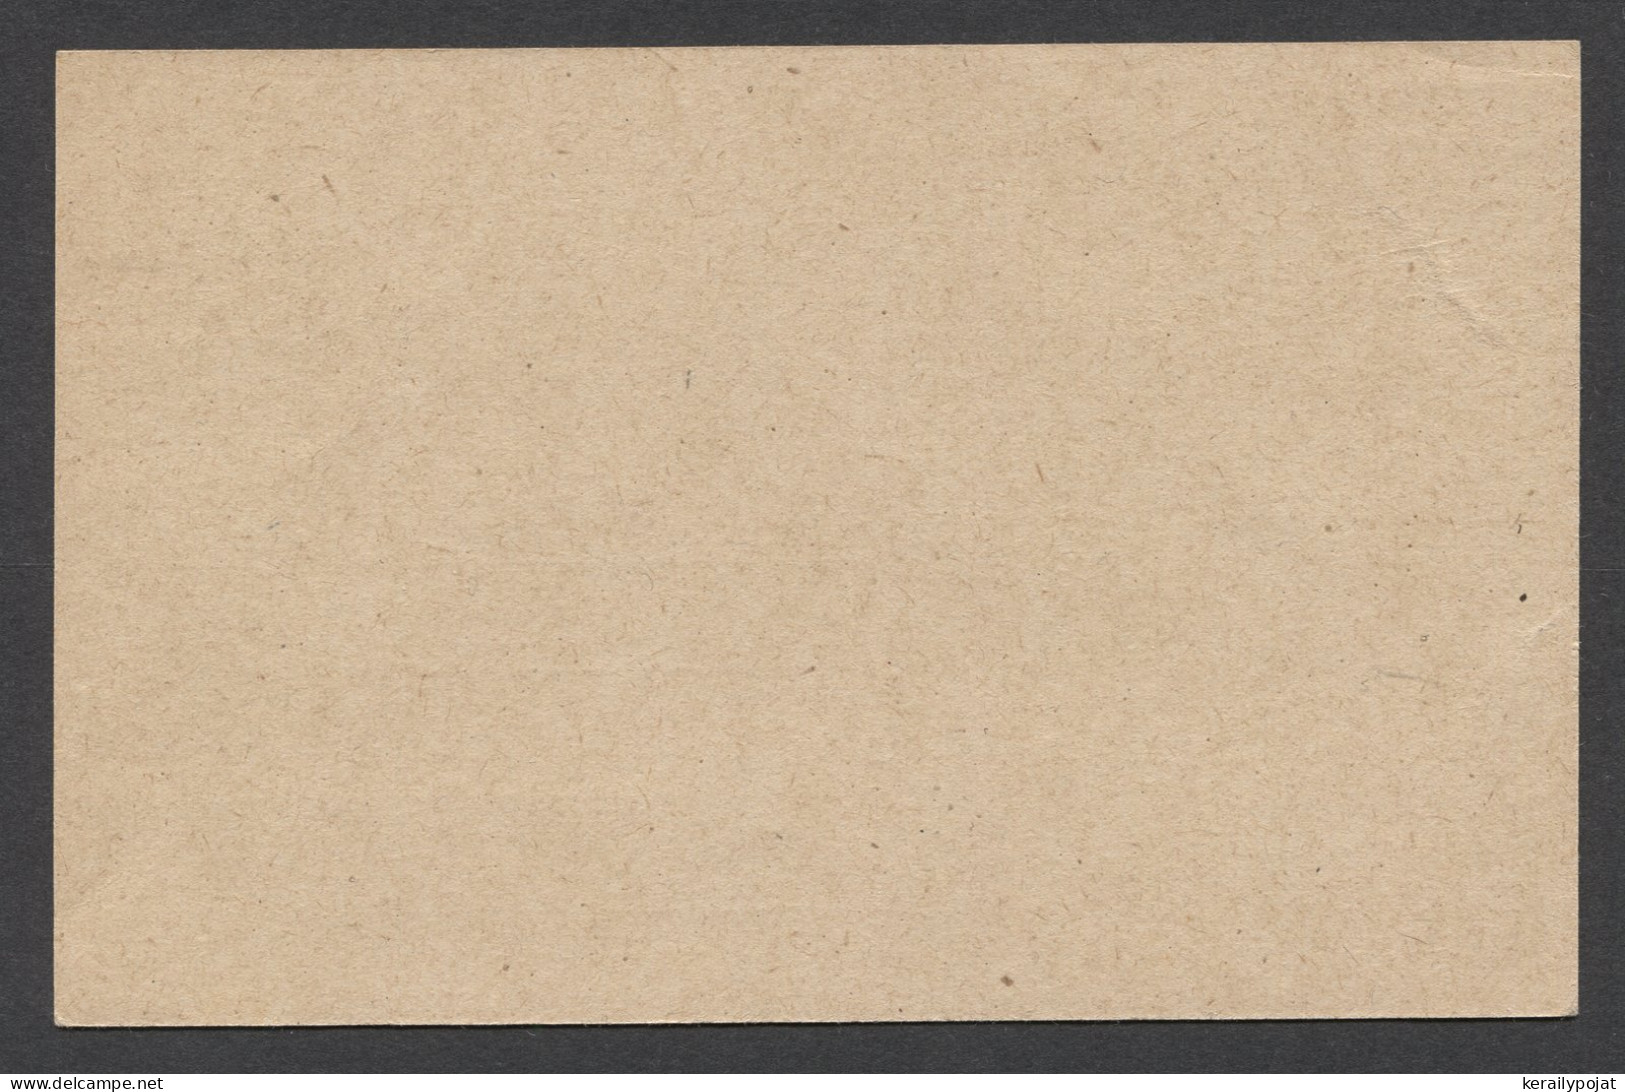 Saargebiet 1920's 30c Unused Stationery Card__(8284) - Ganzsachen